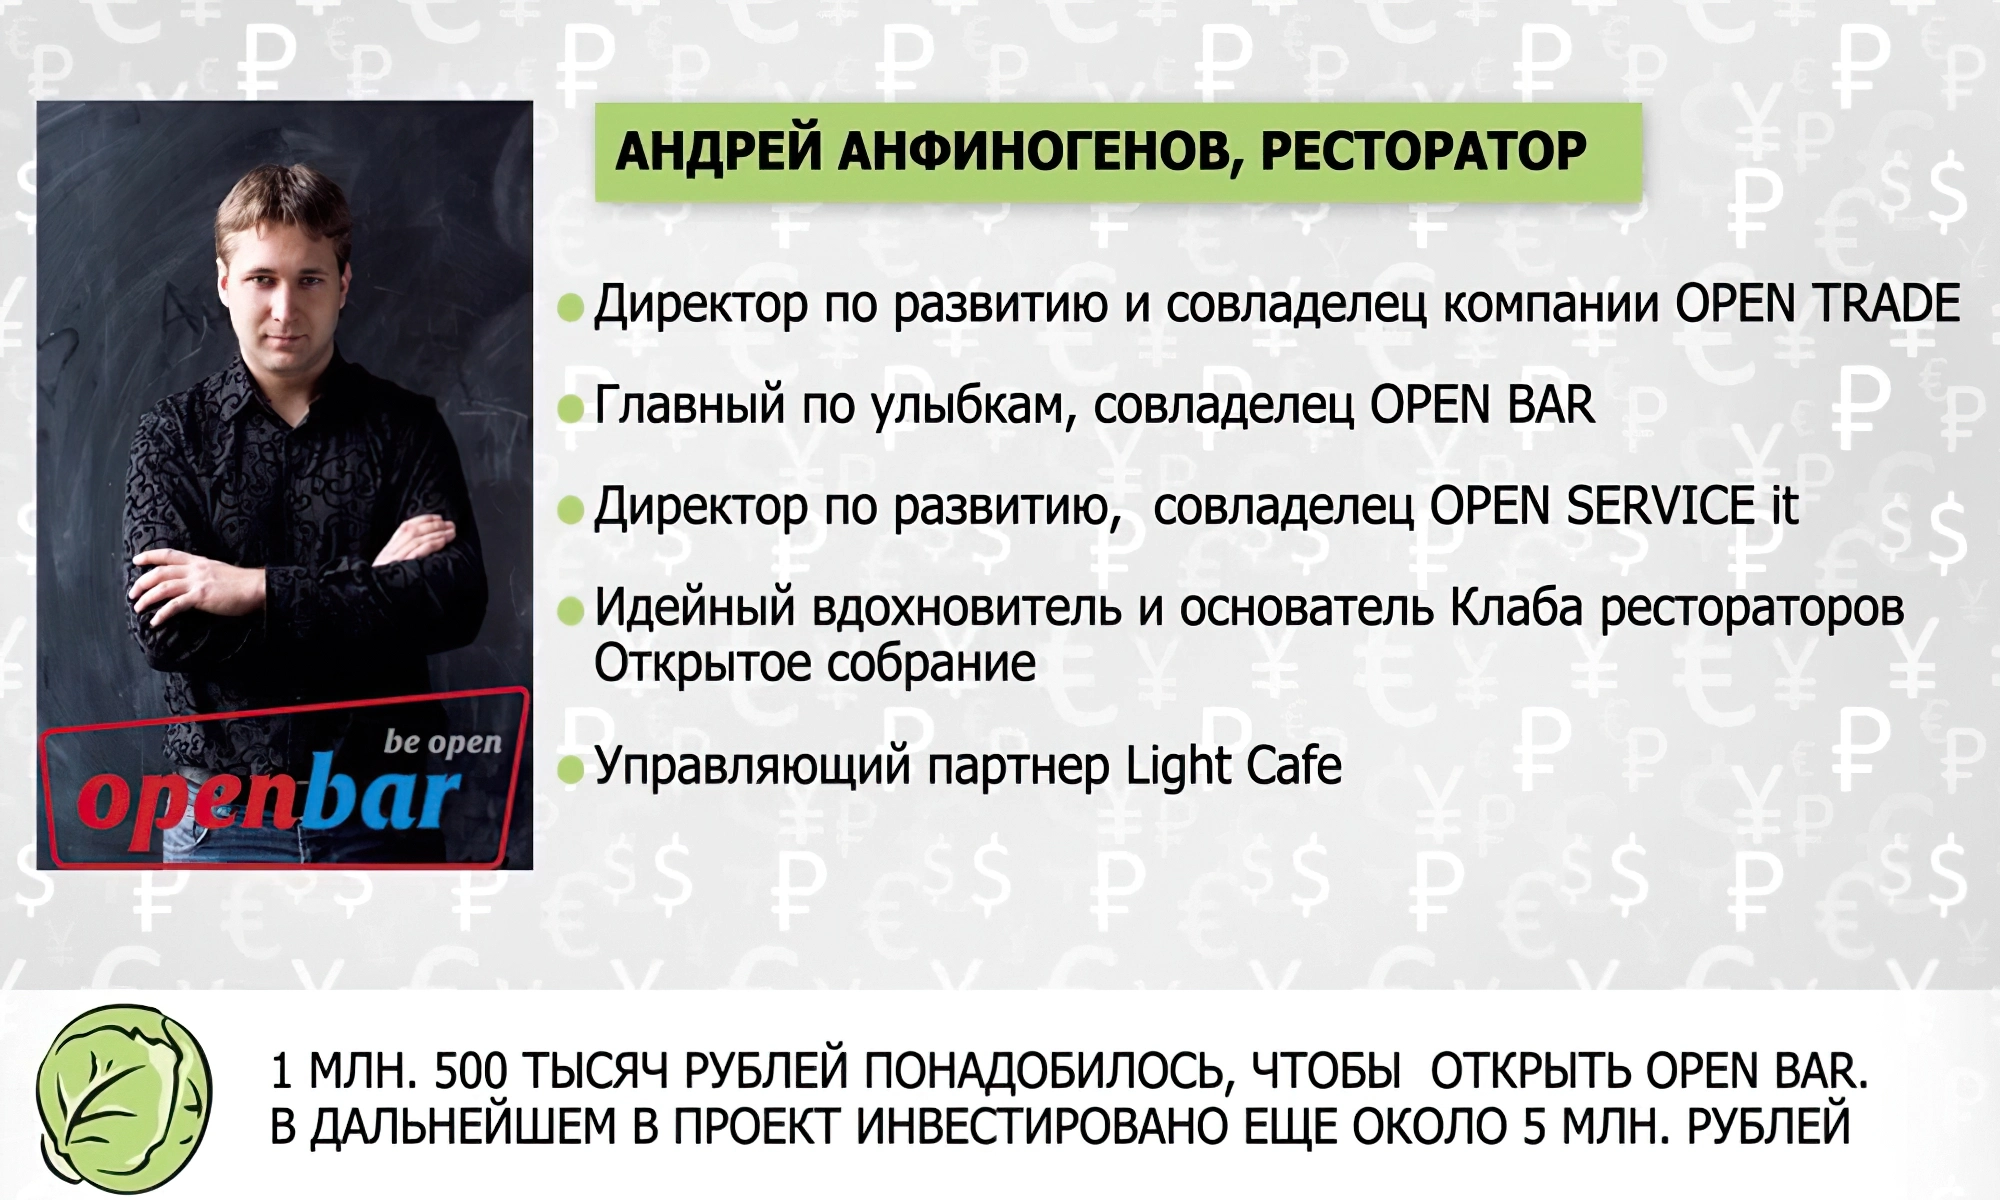 Андрей Анфиногенов - ресторатор и совладелец бара «OPEN BAR»